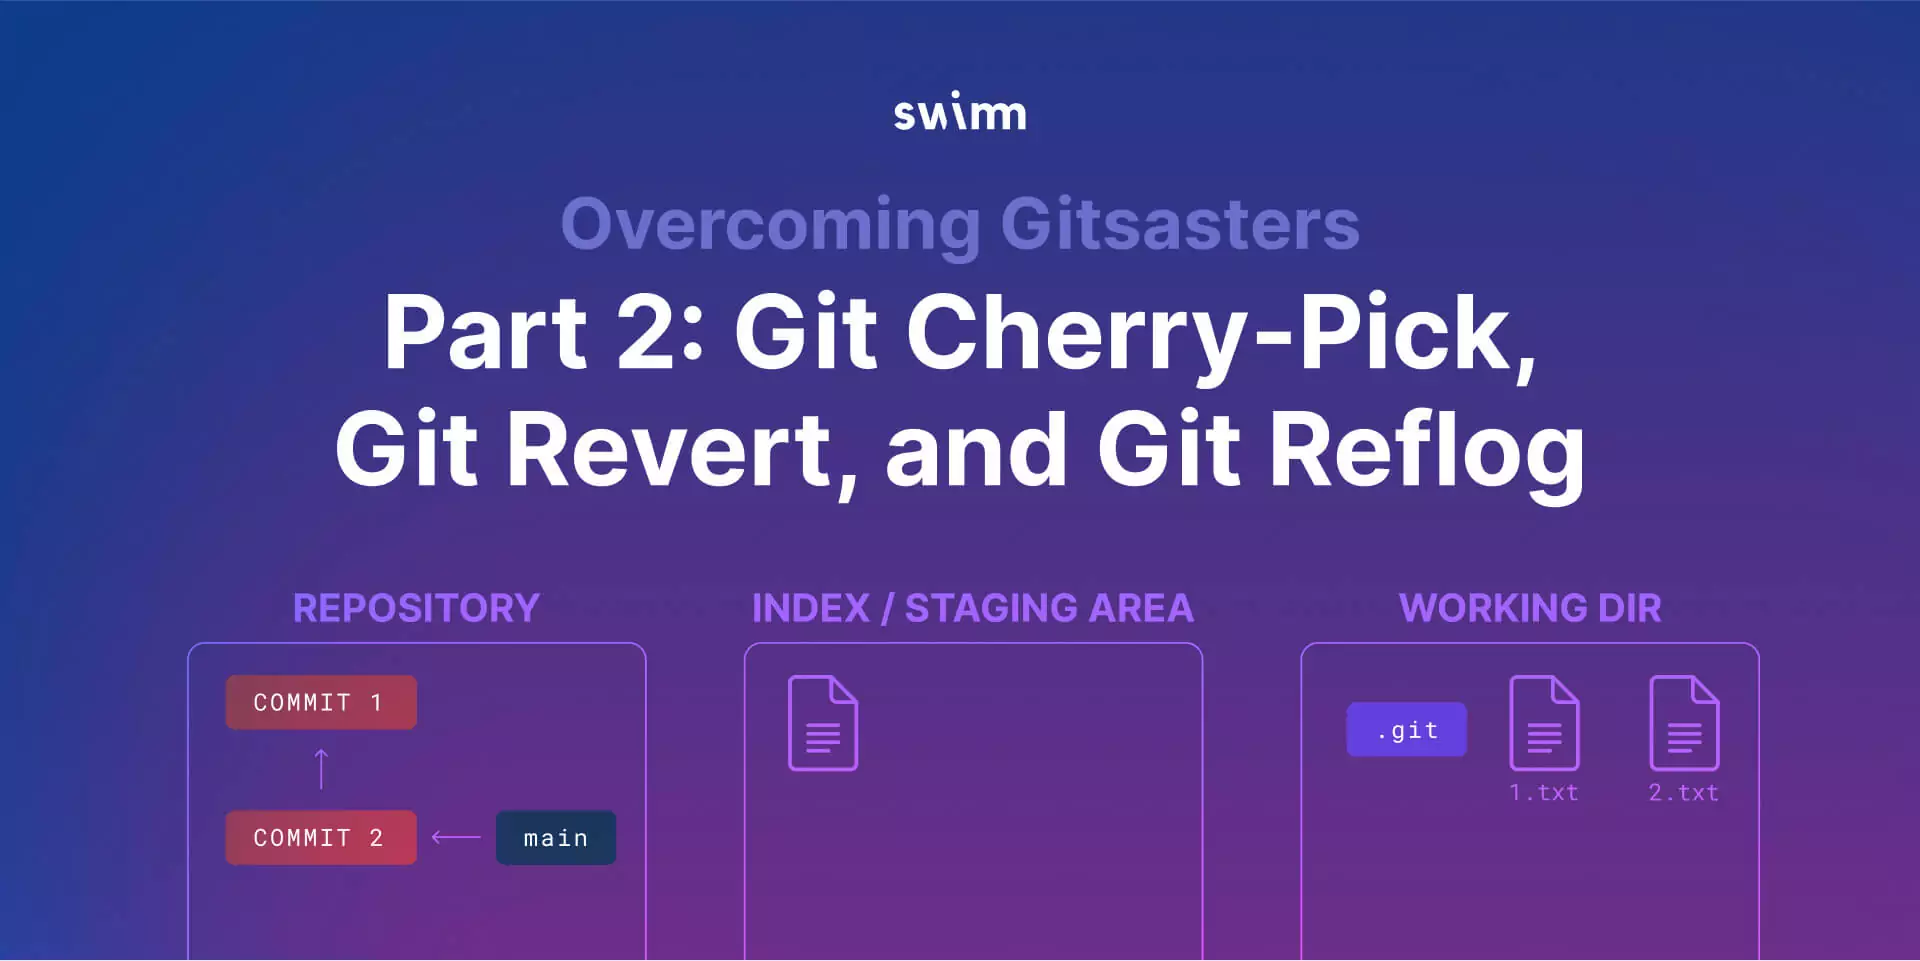 Overcoming Git disasters (Gitsasters) Part 2: Git cherry-pick, Git revert, and Git reflog cover image